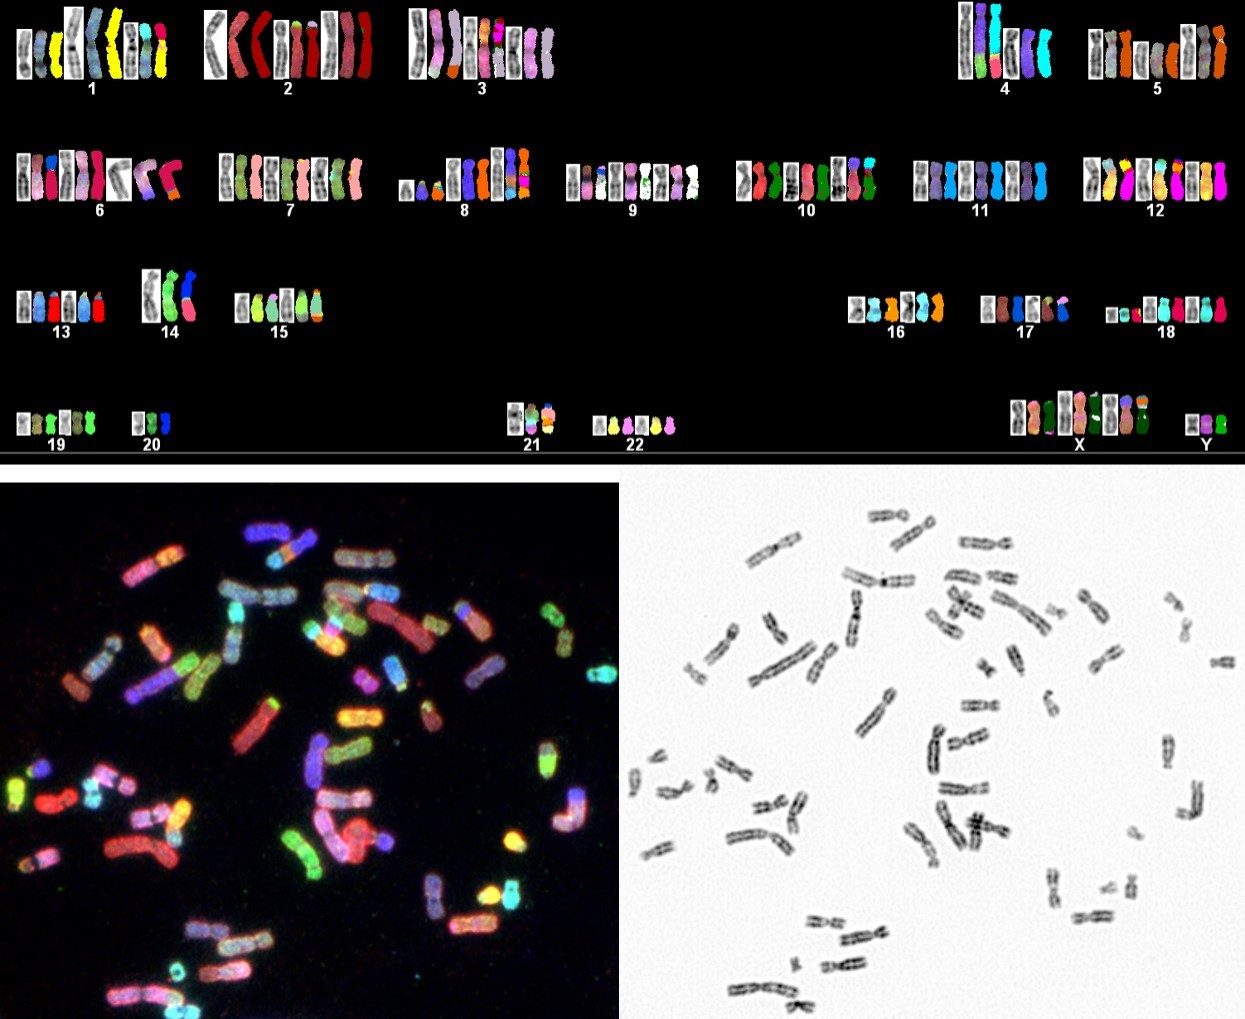 光谱核型分析分析(天空)表示复杂的癌症患者染色体异常